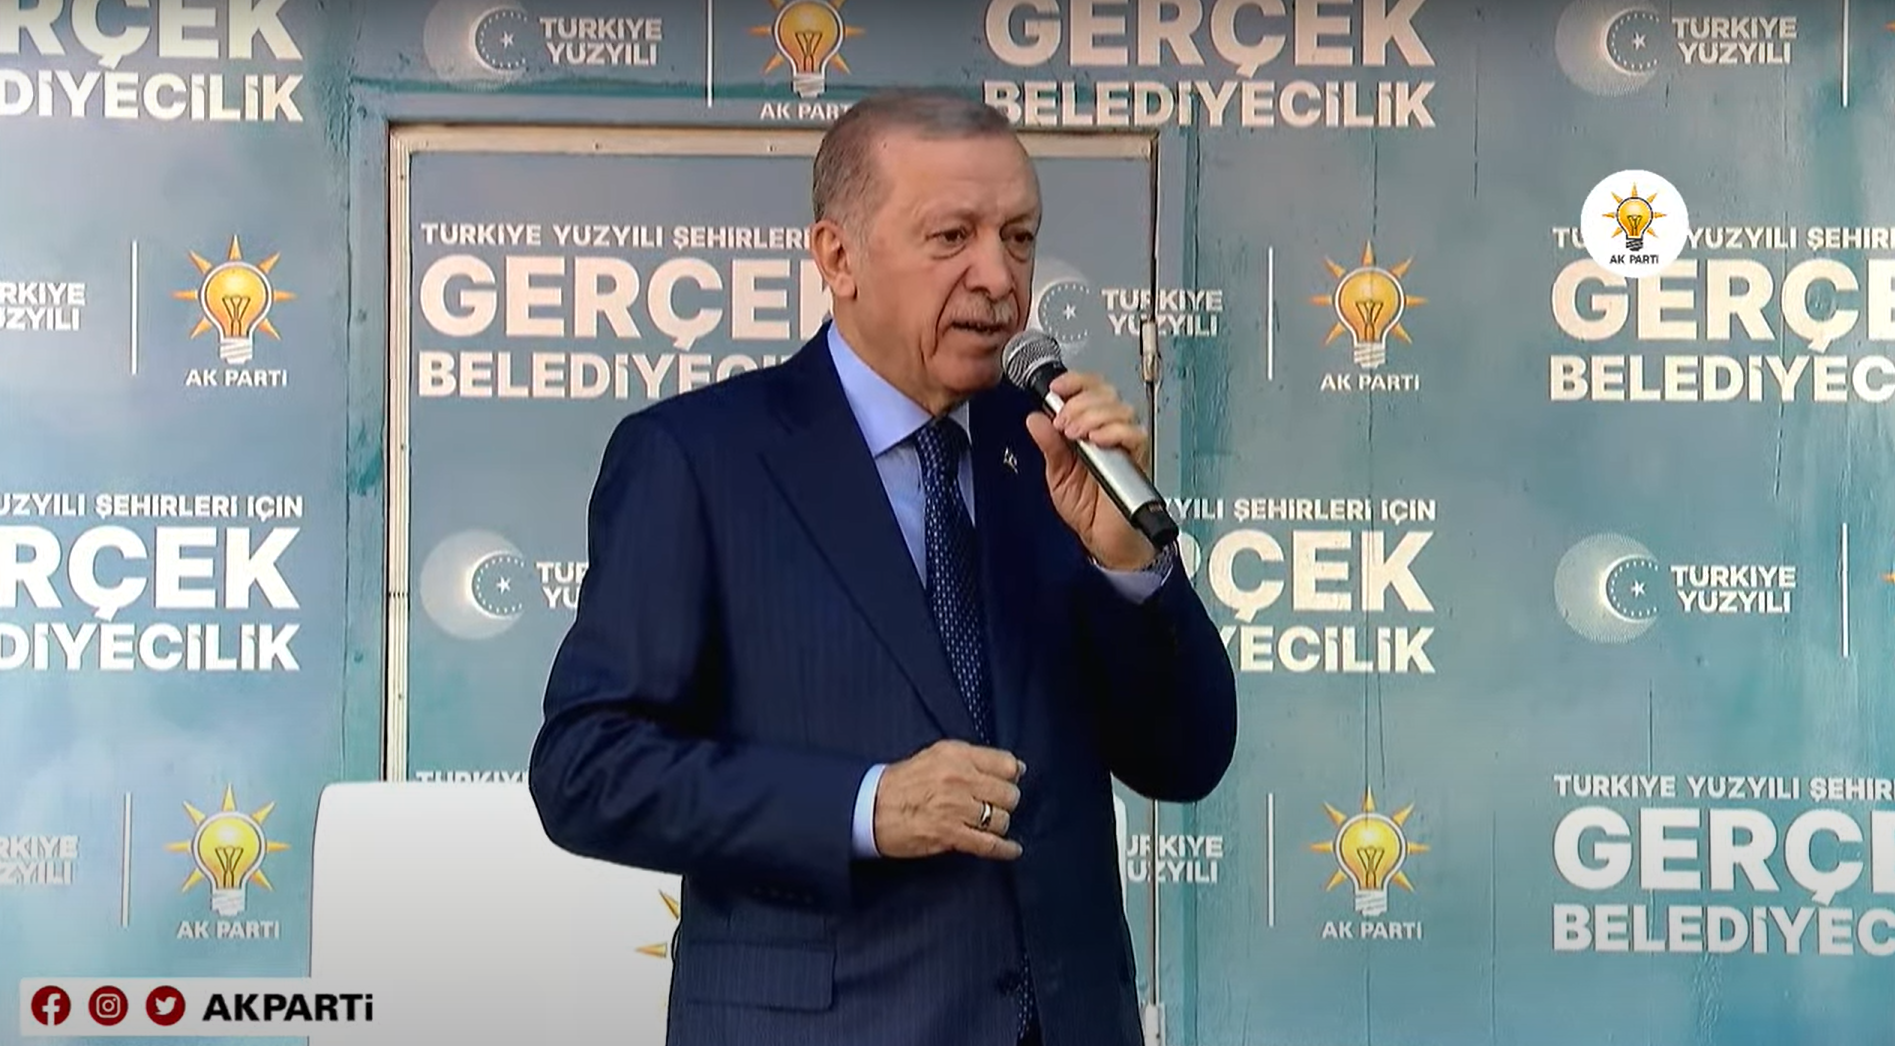 Erdoğan Mersin Mitingi'nde konuştu: Herhalde sadece benim ülkemde vardır...